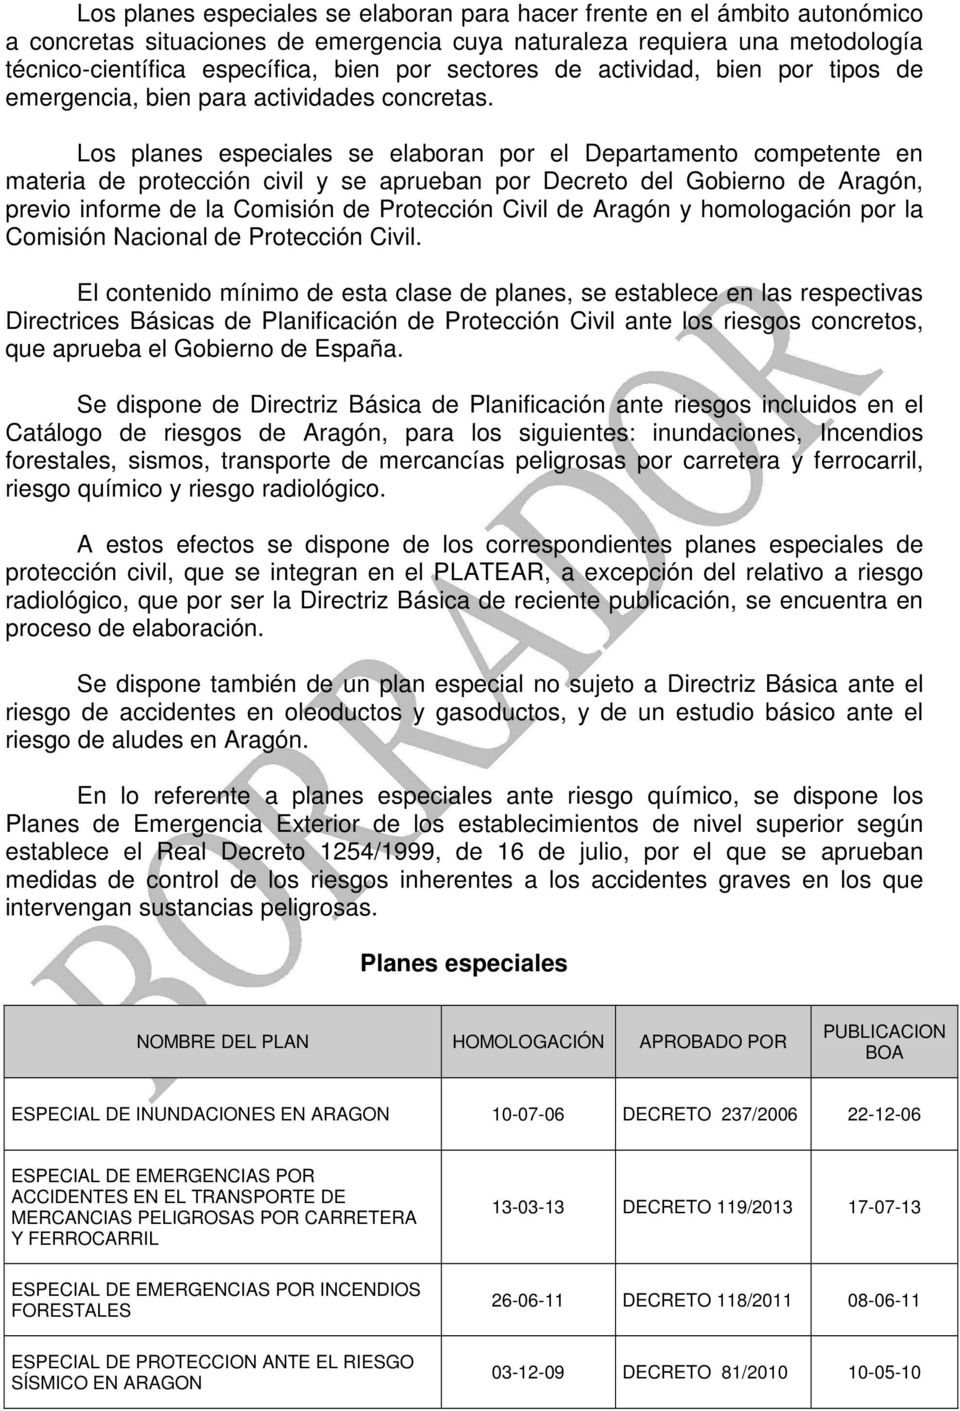 Los planes especiales se elaboran por el Departamento competente en materia de protección civil y se aprueban por Decreto del Gobierno de Aragón, previo informe de la Comisión de Protección Civil de